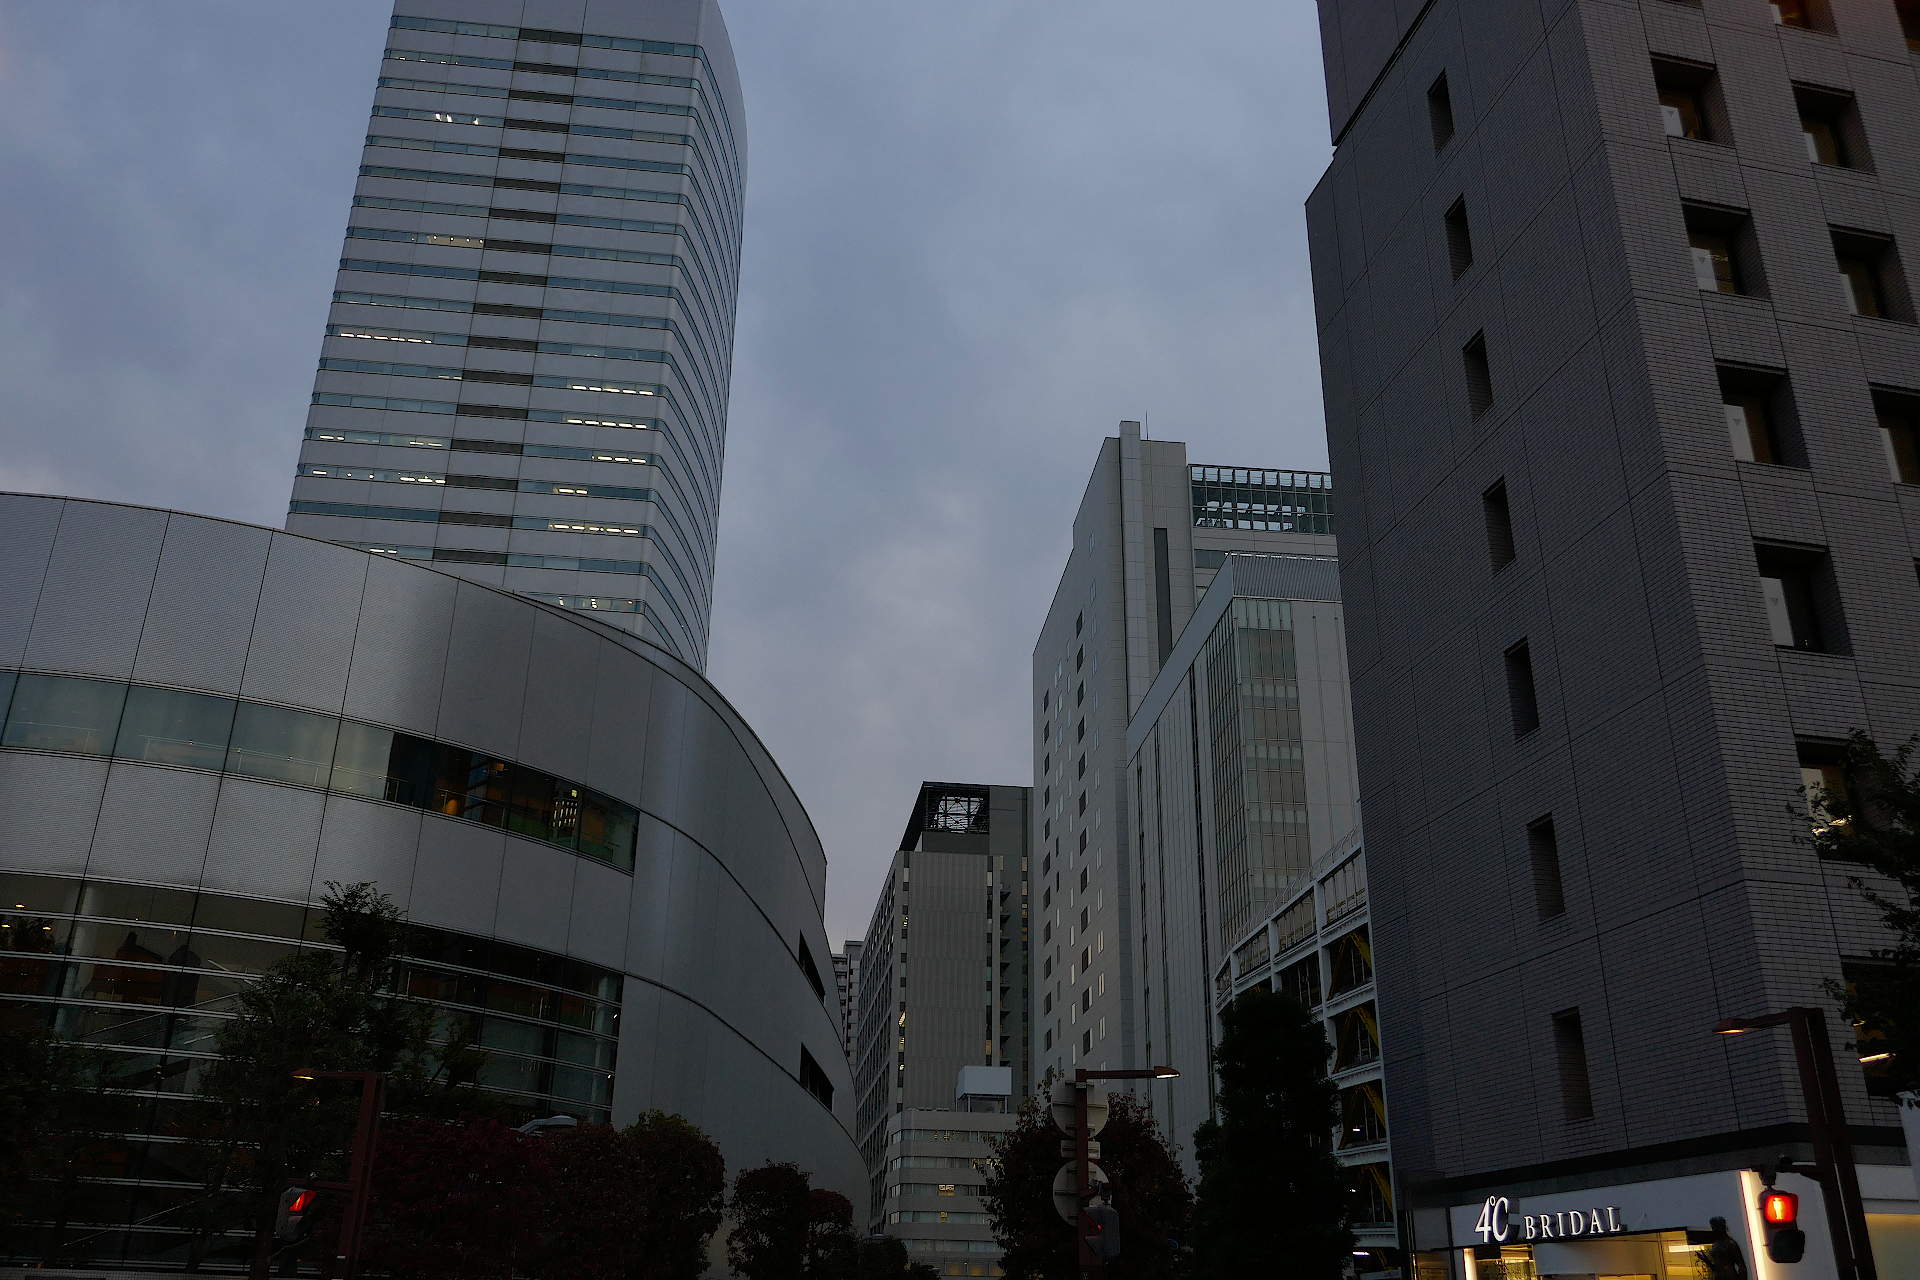 埼玉県さいたま市大宮駅近辺の都市の風景写真。 仄暗い夕暮れ時の高層ビルディングが写っている。